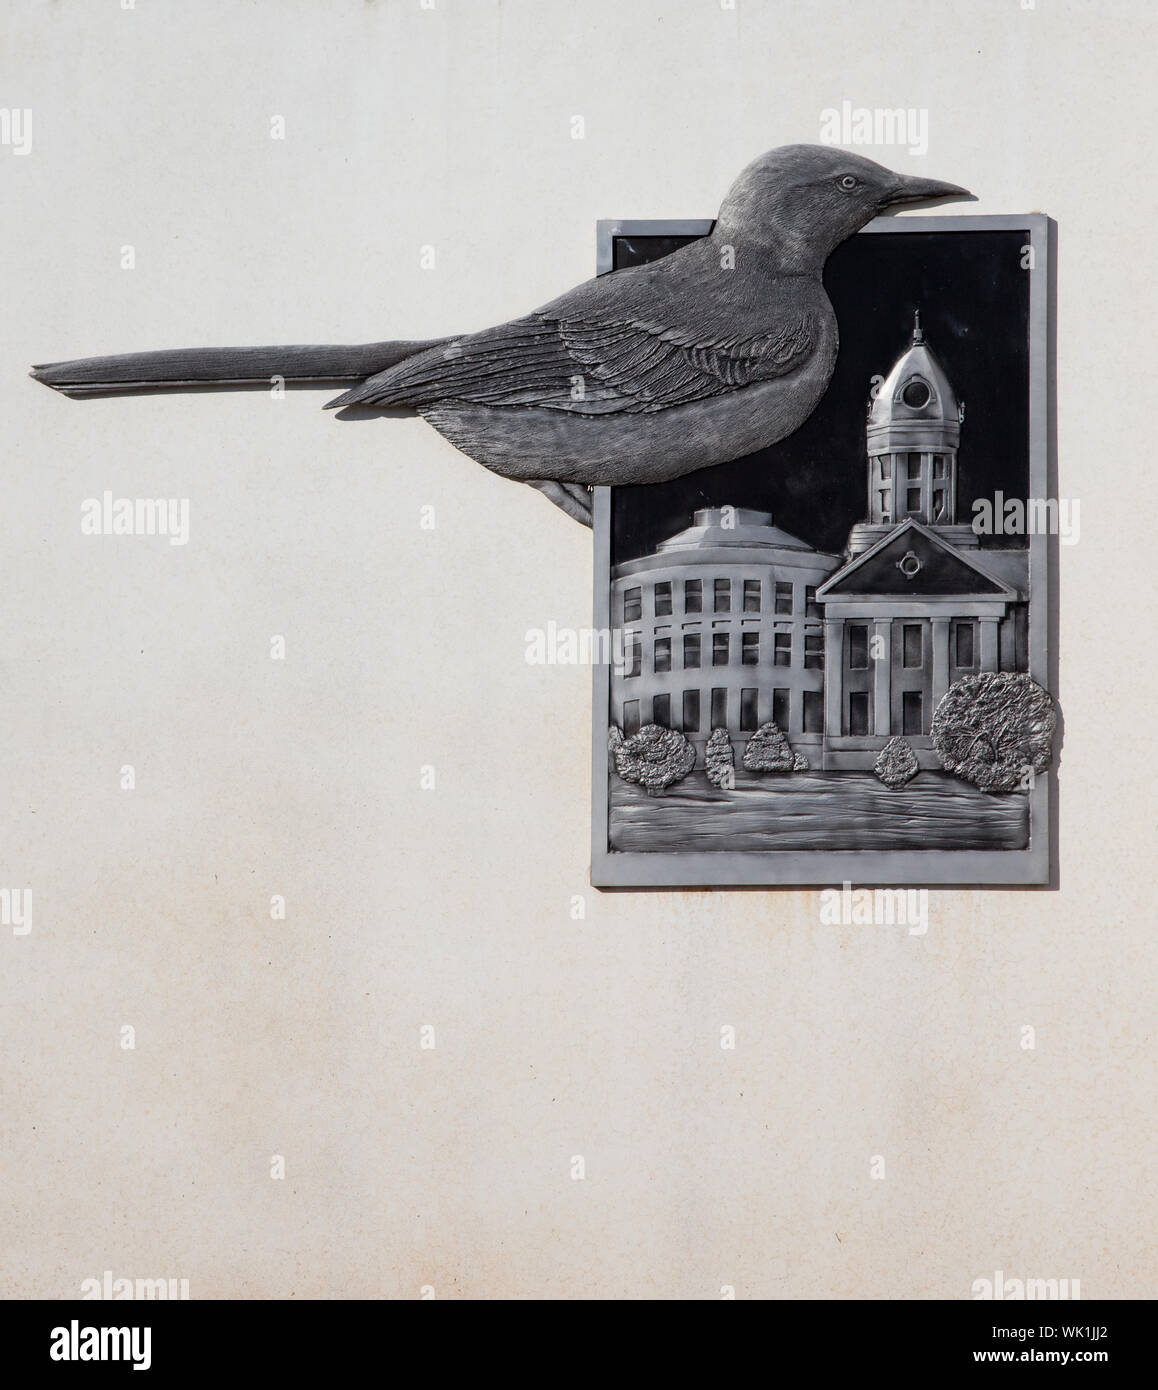 Sito industriale logo in Monroeville, Alabama, mostrando l'uccello e il vecchio Monroe County Courthouse utilizzata nel gioco per uccidere un Mockingbird da parte di un residente Harper Lee Foto Stock